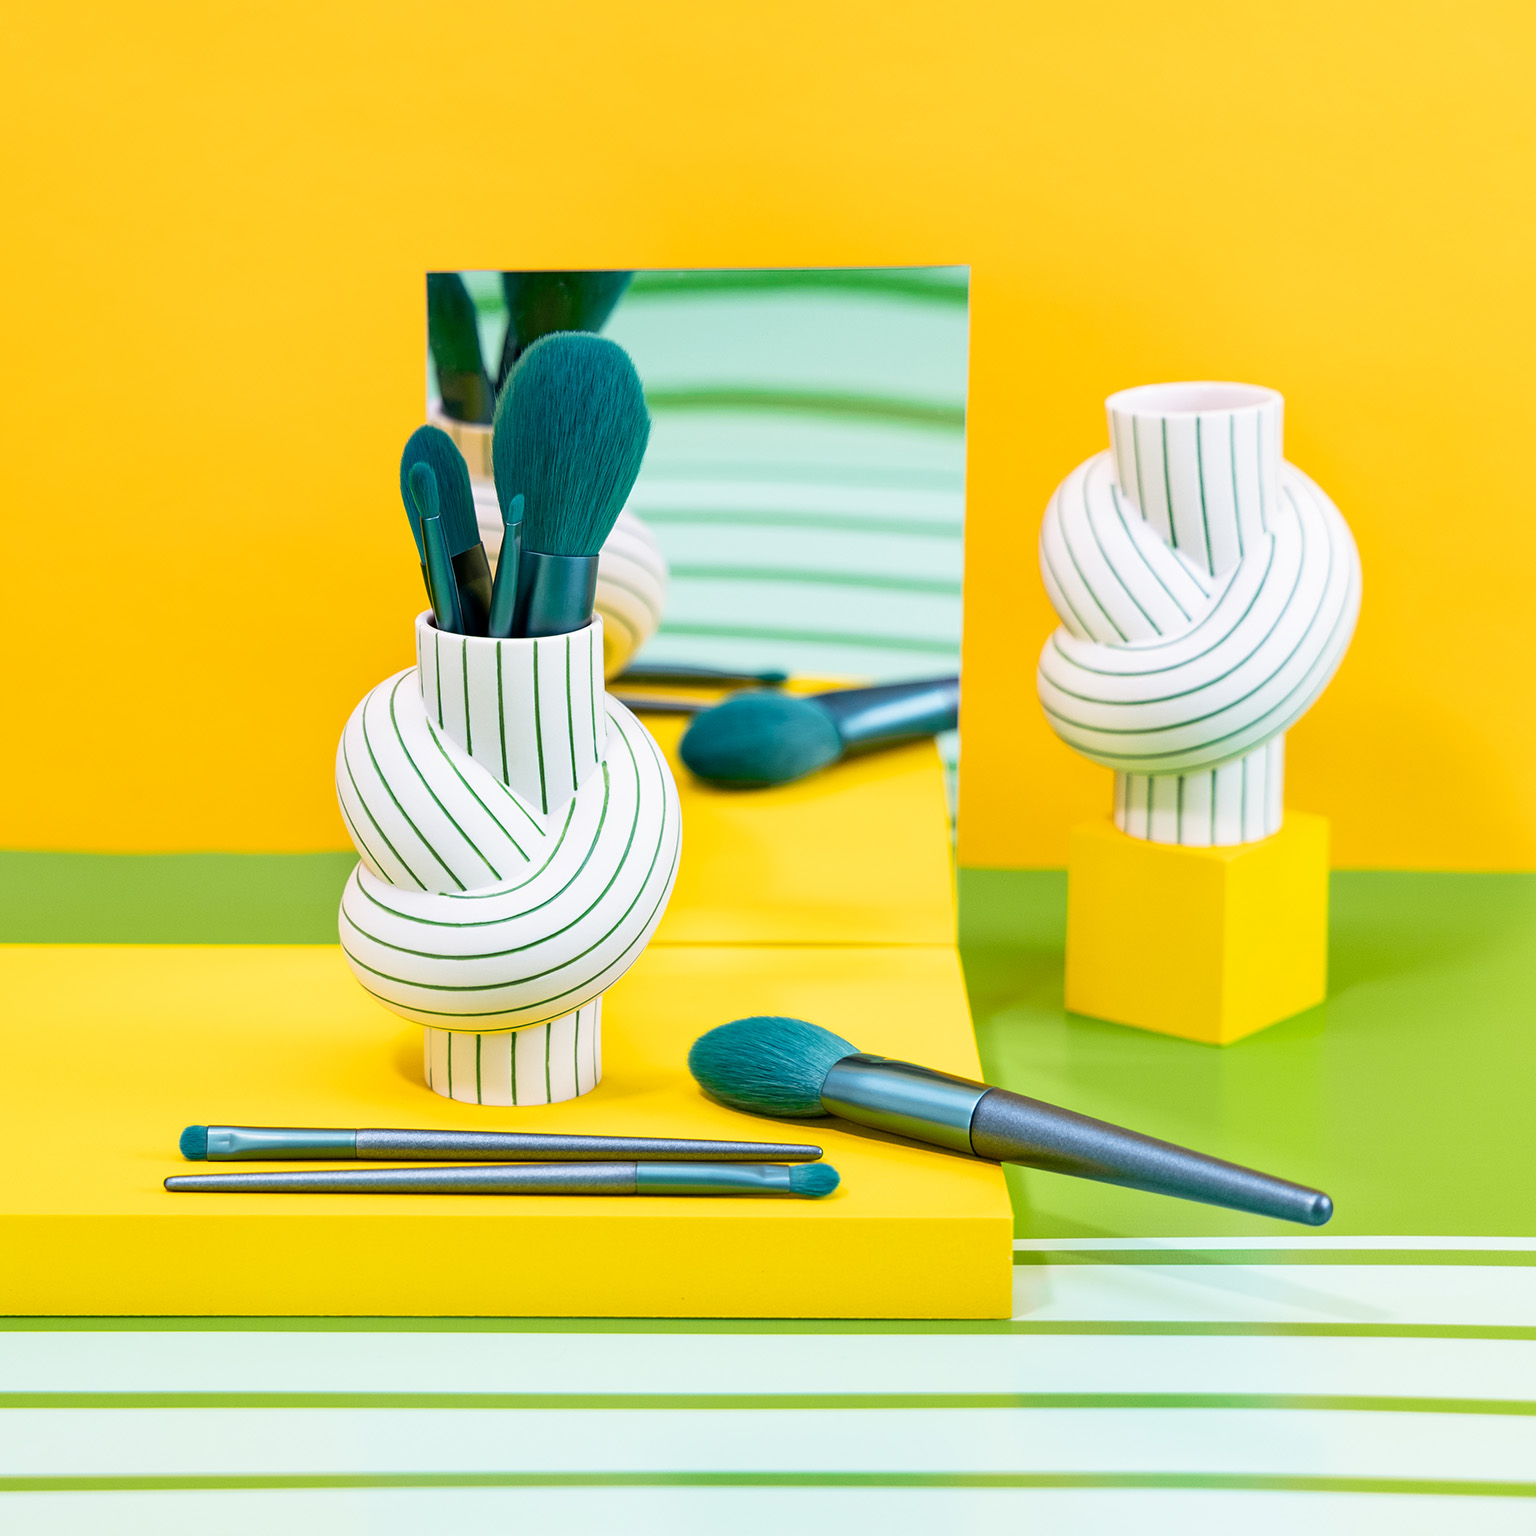 Vase Node Stripes Apple rempli de pinceaux de maquillage de couleur pétrole sur fond jaune à rayures blanches et vertes et miroir.